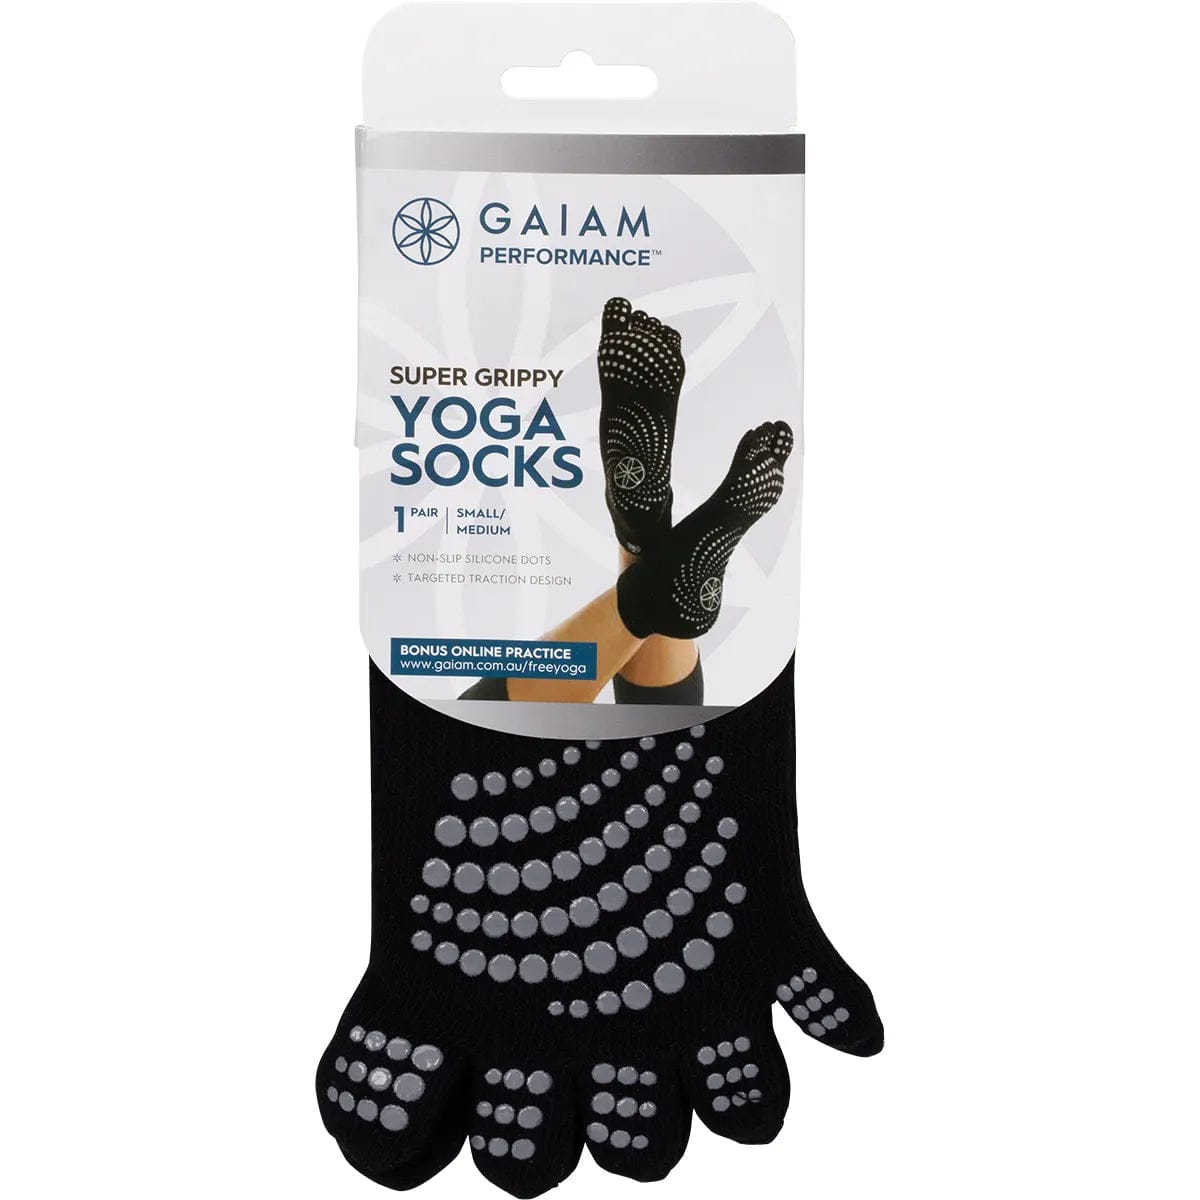 GAIAM Super Grippy Yoga Socks Small/Medium